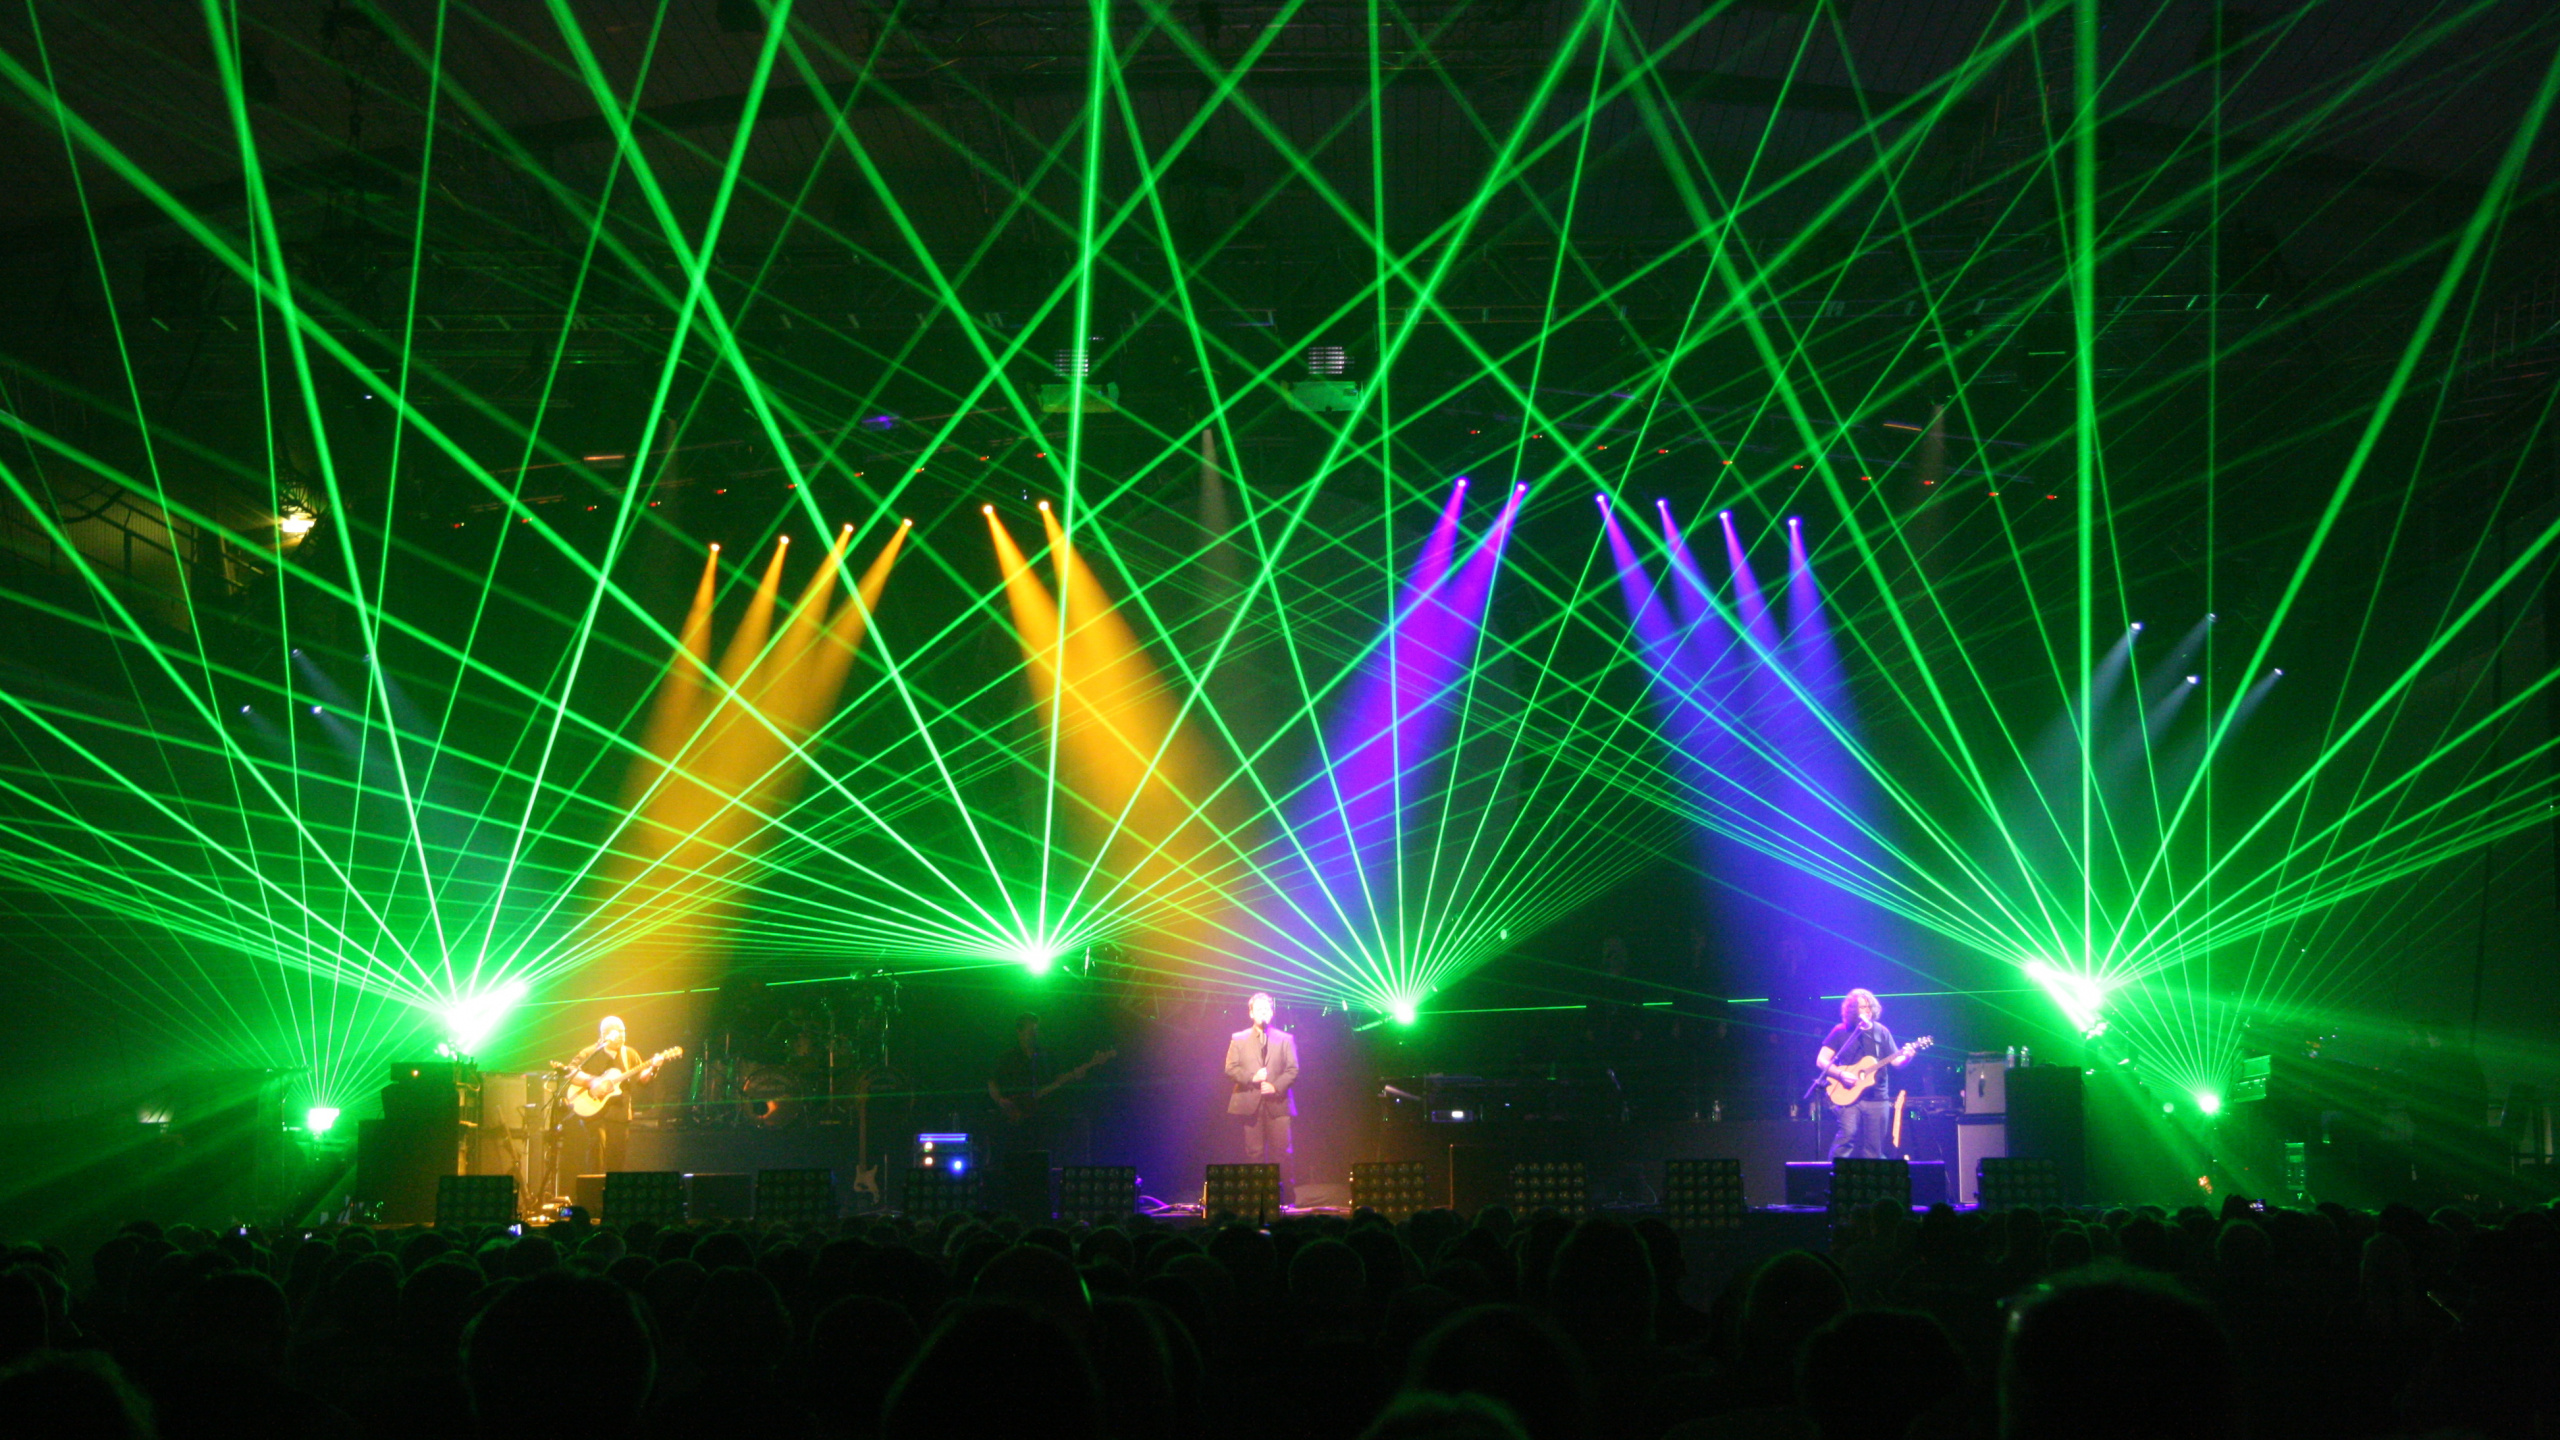 Pink Floyd, L'Australian Pink Floyd Show, Concert, Green, Lumière. Wallpaper in 2560x1440 Resolution